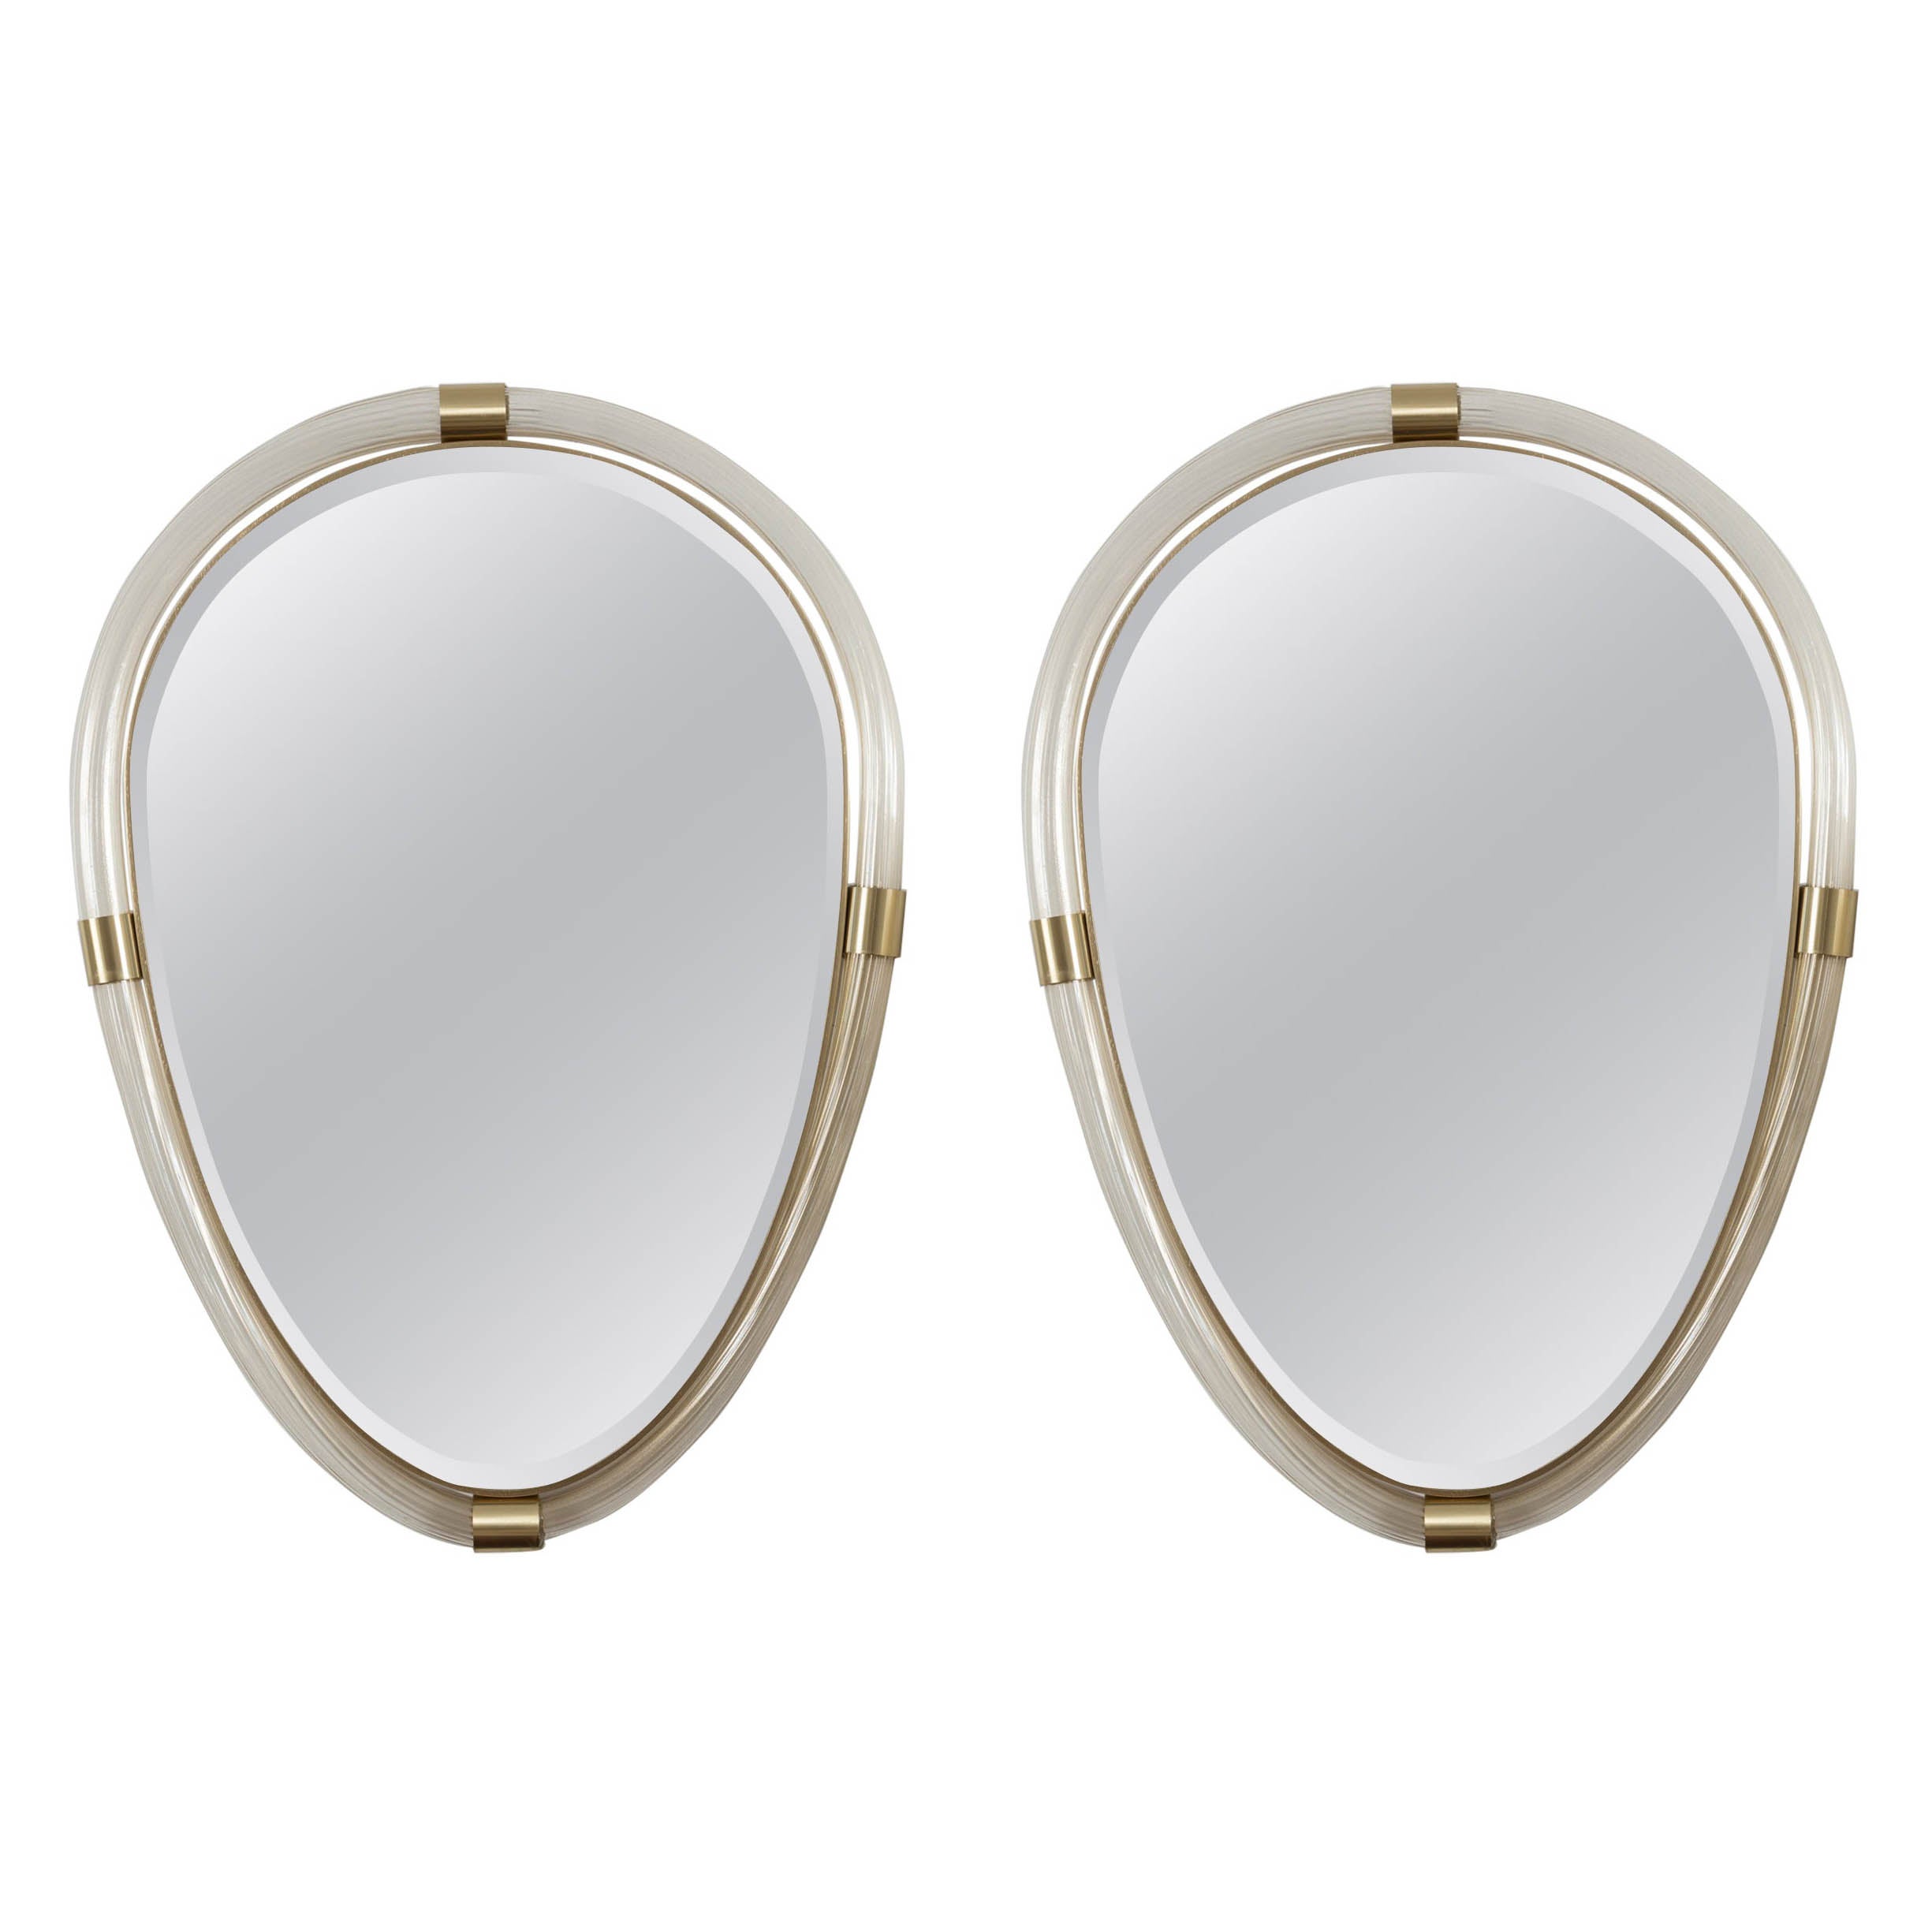 Paire de miroirs ovales torchères artisanaux en or soufflé de Murano, contemporains